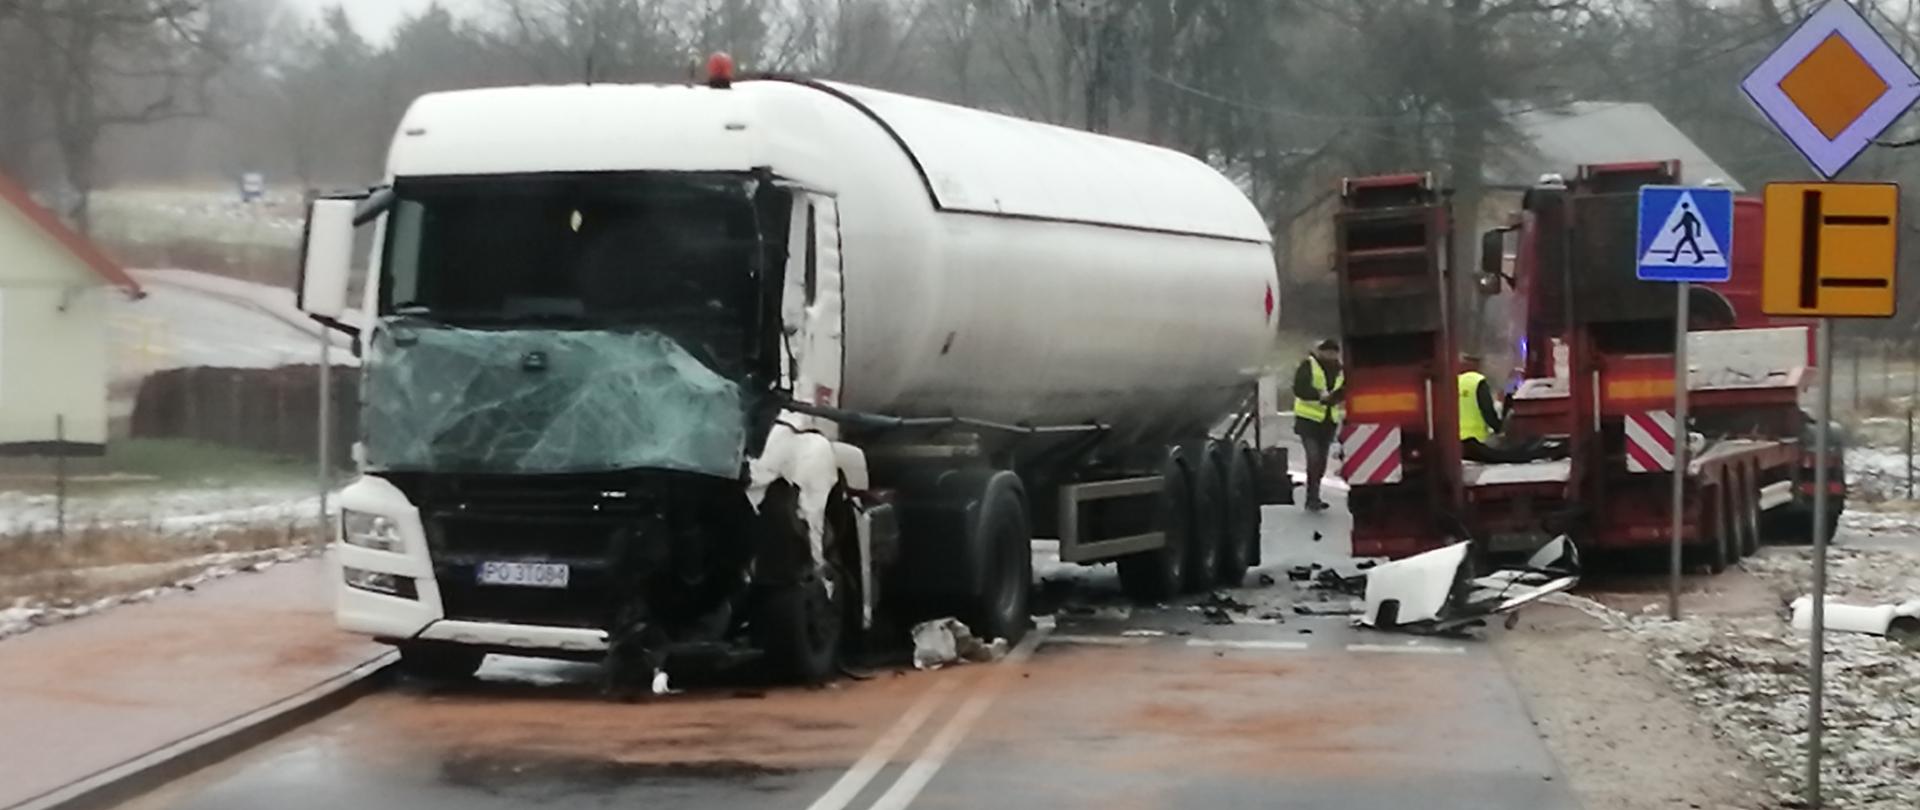 Zderzenie ciężarówek w Chruszczewce na zdjęciu widać 2 samochody ciężarowe uczestniczące w zdarzeniu.